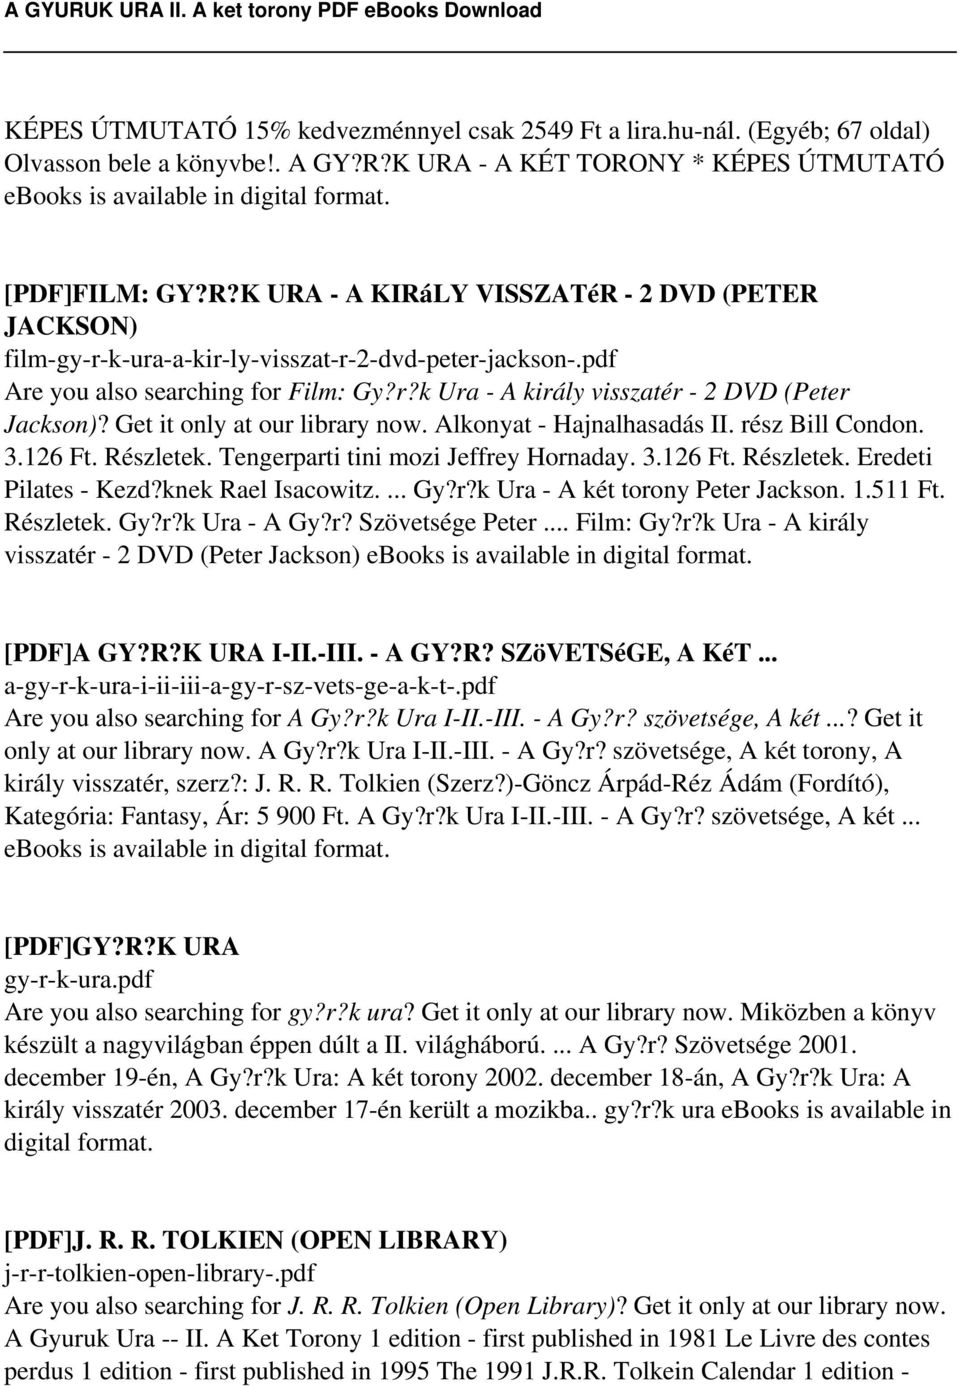 A GYURUK URA II. A ket torony - PDF Ingyenes letöltés